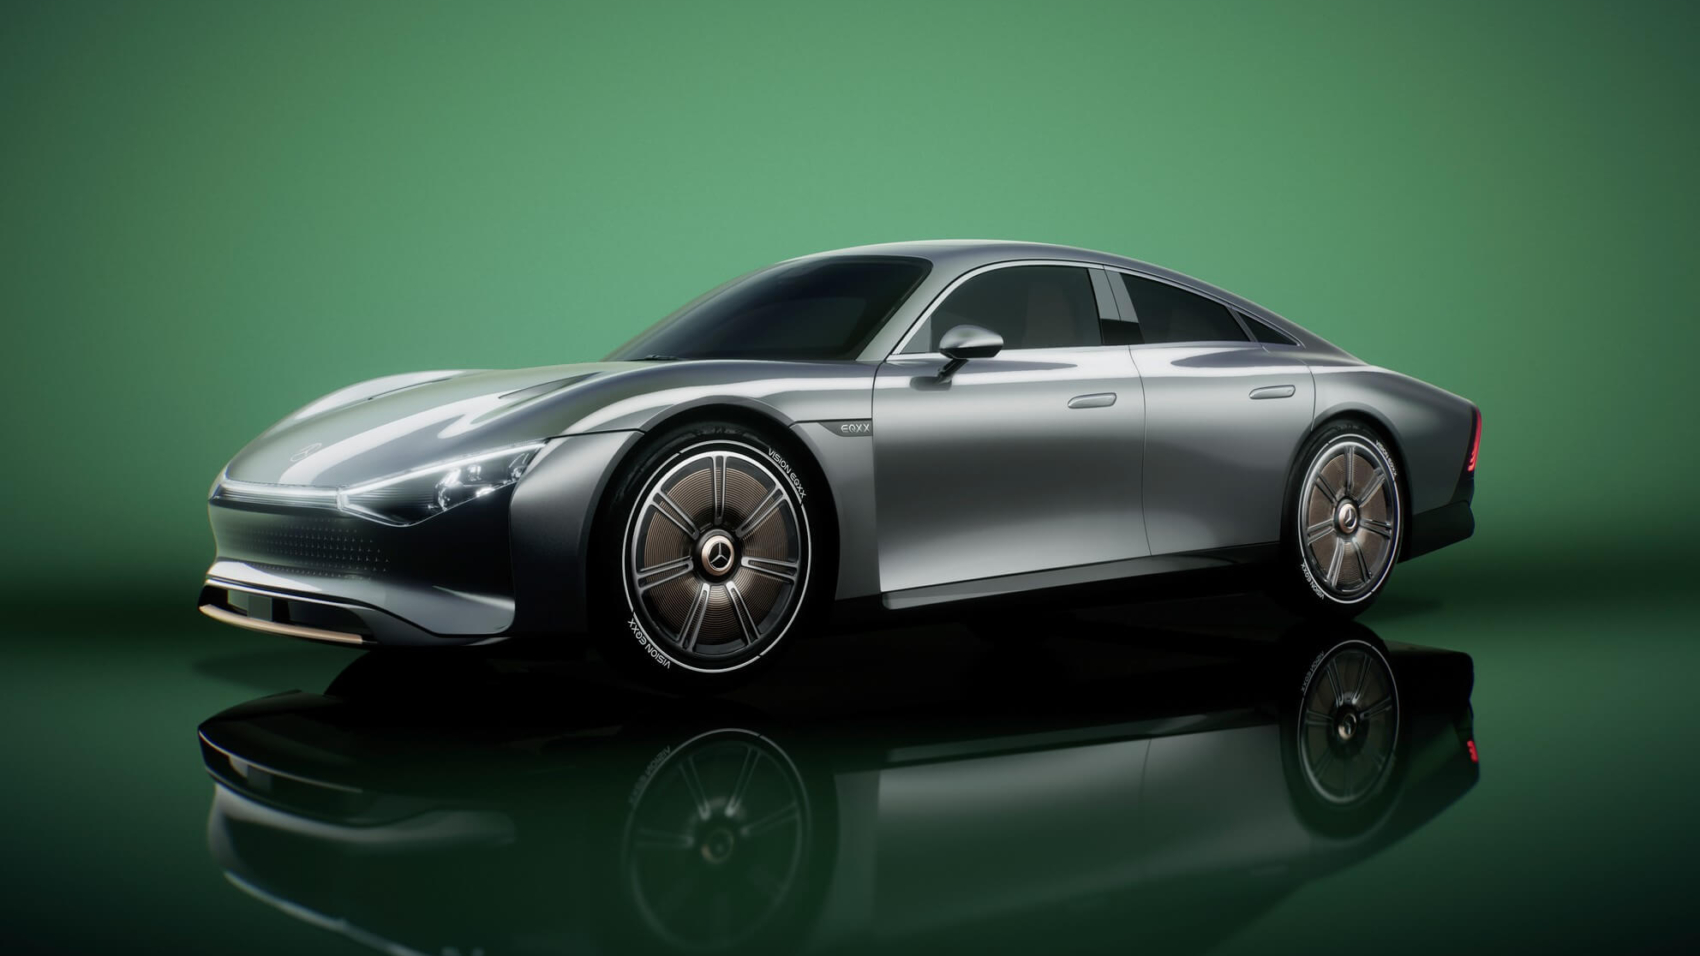 Mercedes Vision EQXX concept